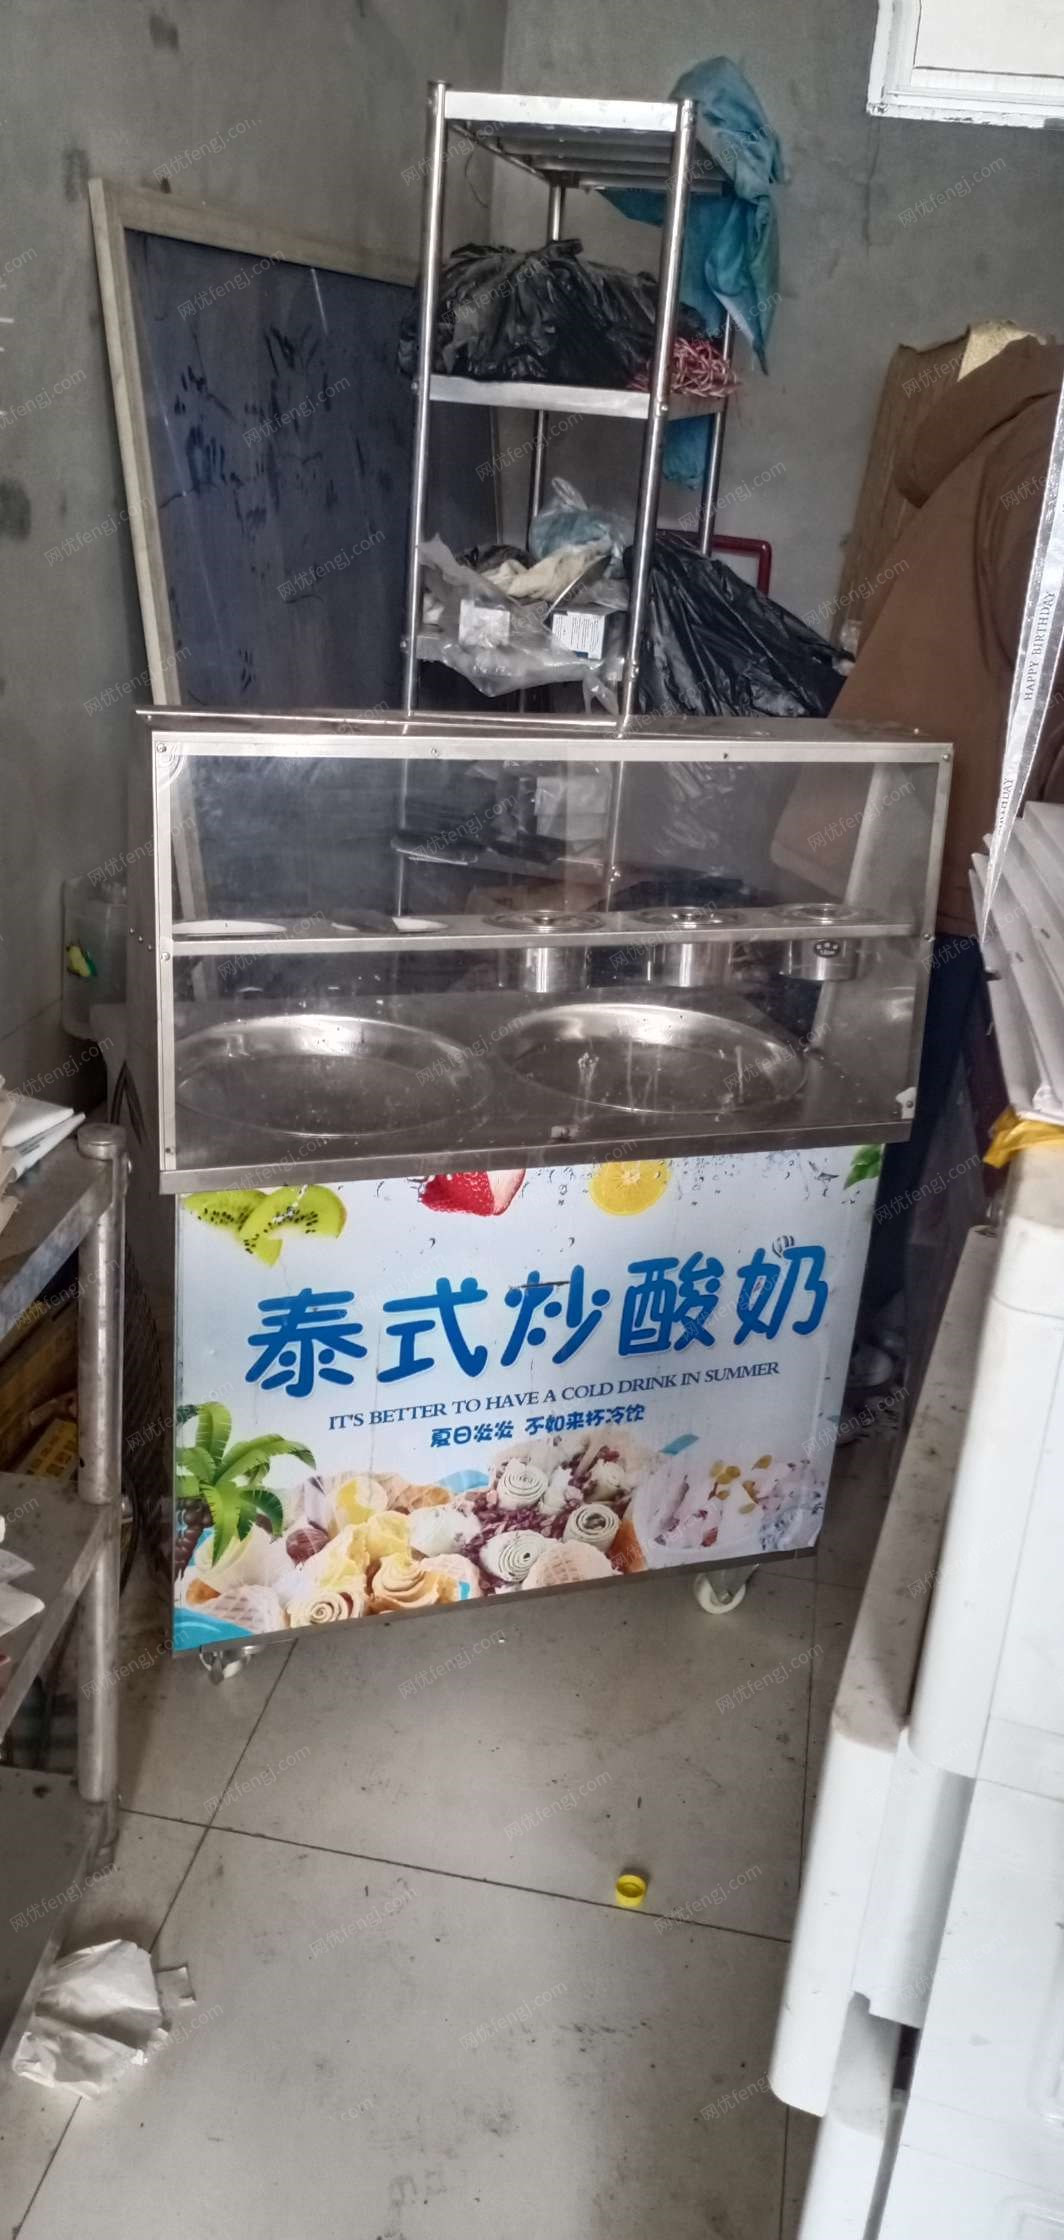 山东济南由于本人工作原因，现出售炒酸奶机一台，正常使用非诚勿扰。